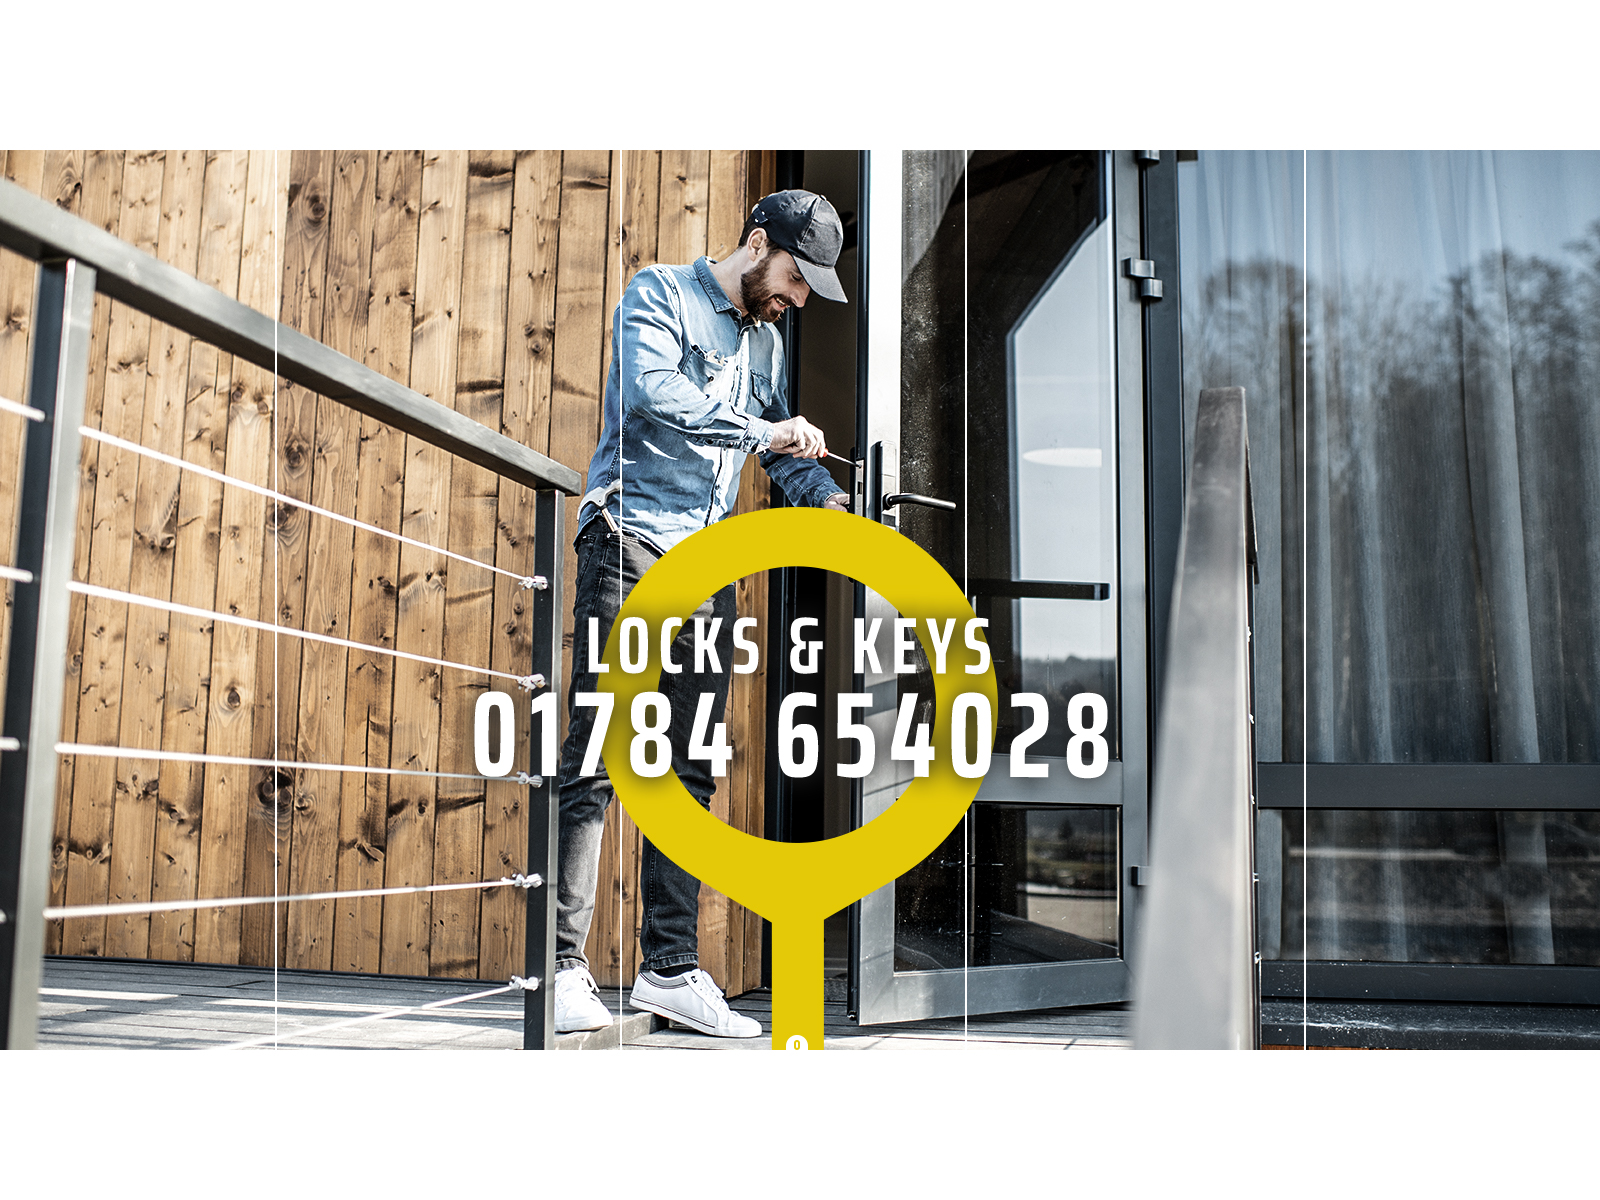 Logo of Locks Keys